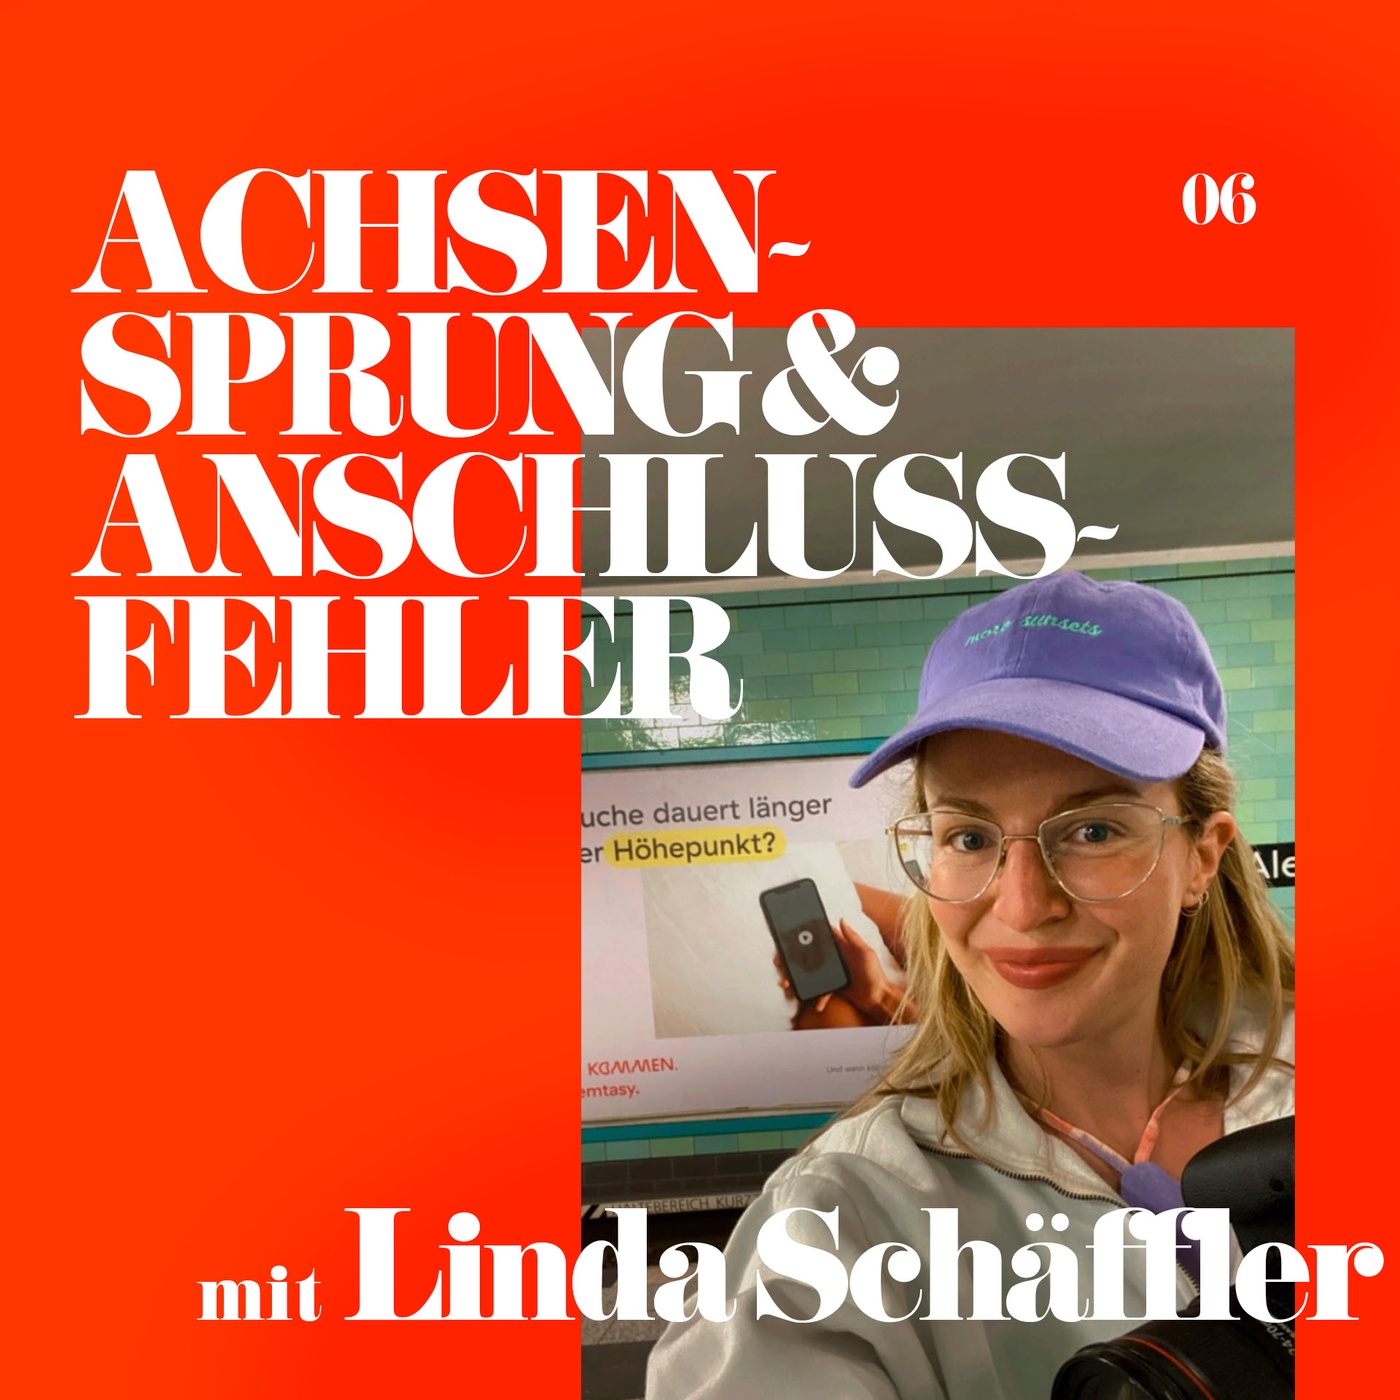 06: Linda Schäffler (Fotografin)